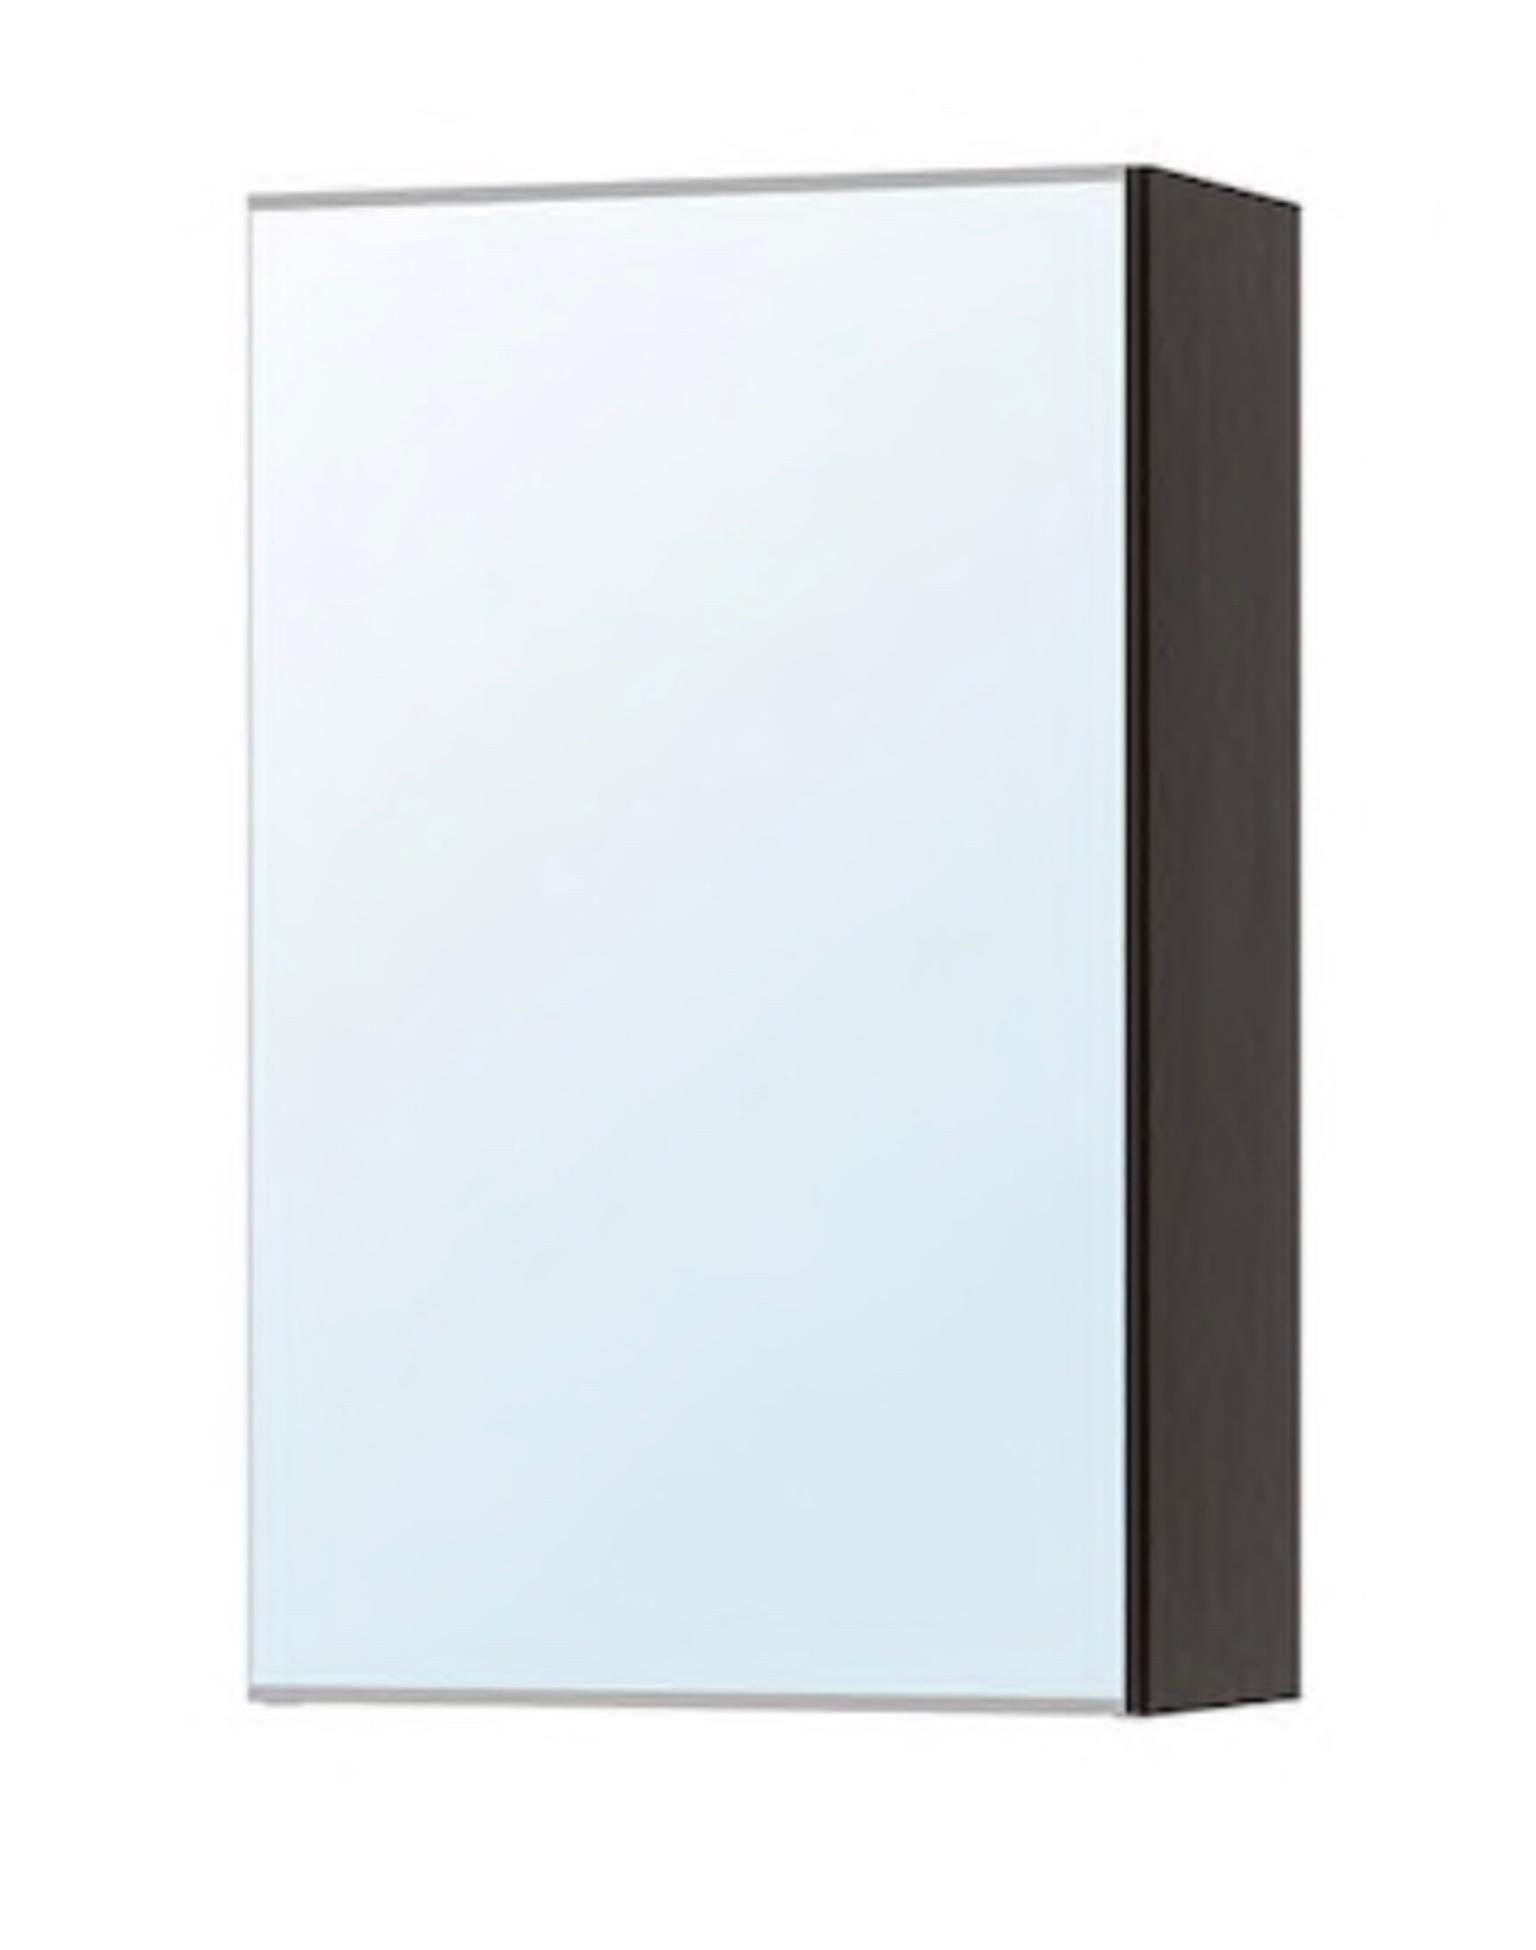 Ikea Lillangen Mirror Bathroom Cabinet In Cr0 London Fur 10 00